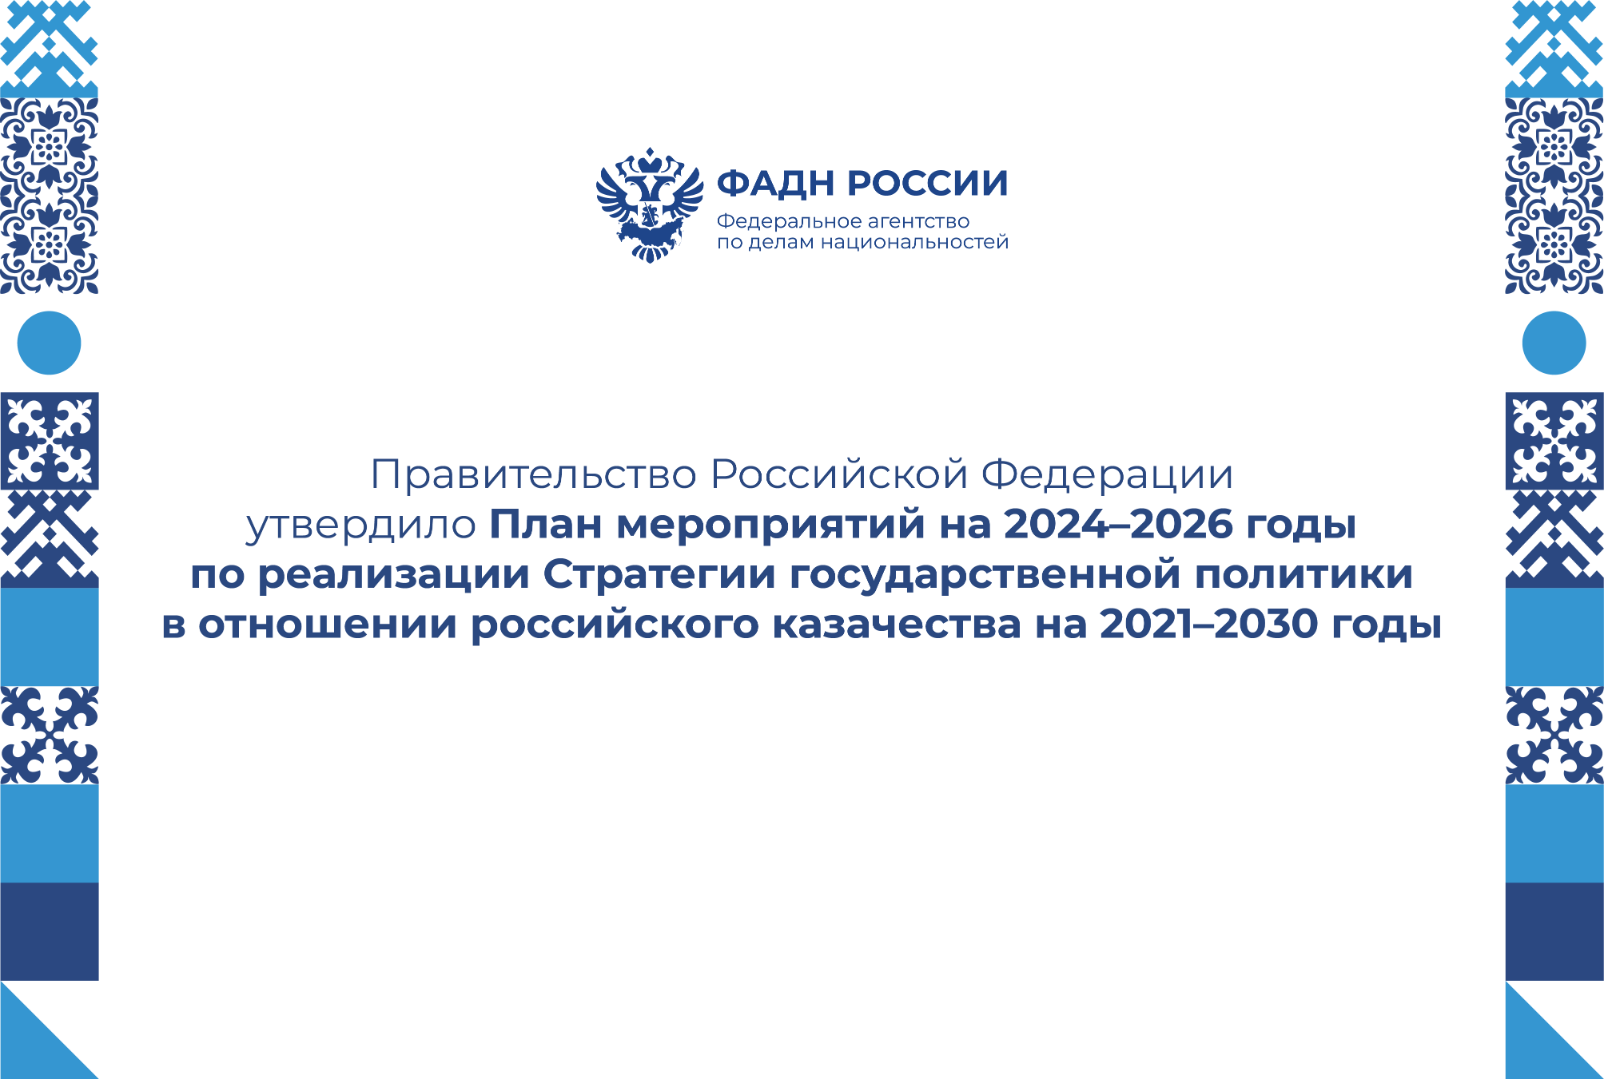 Правительство Российской Федерации утвердило План мероприятий на 2024–2026 годы по реализации Стратегии государственной политики в отношении российского казачества на 2021–2030 годы.